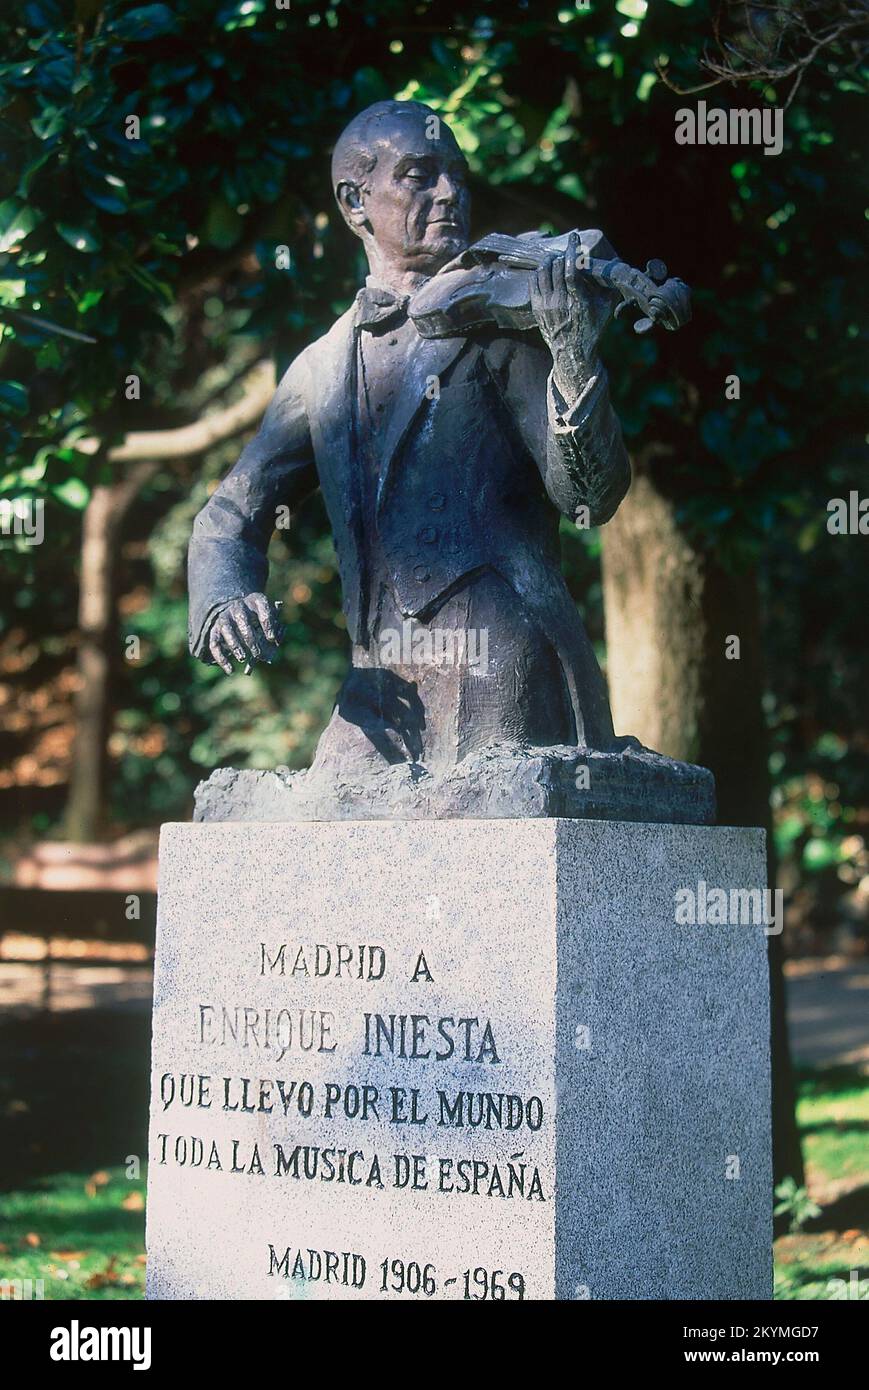 MONUMENTO A ENRIQUE INIESTA (1906/1969). Location: PARQUE DE LA FUENTE DEL BERRO. MADRID. SPAIN. Stock Photo